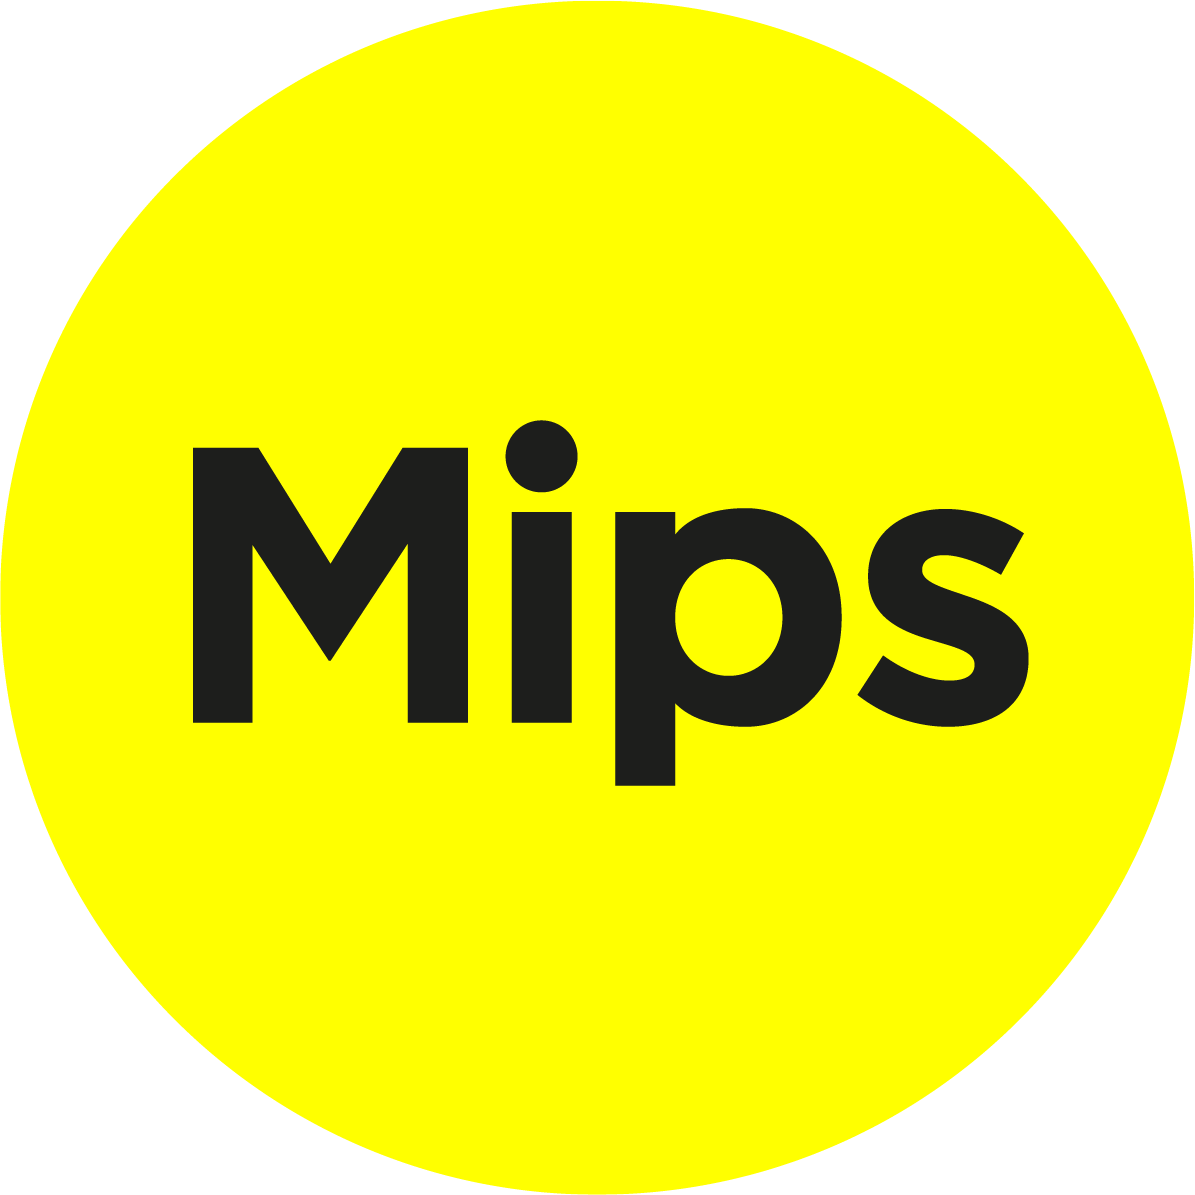 MIPS logotype